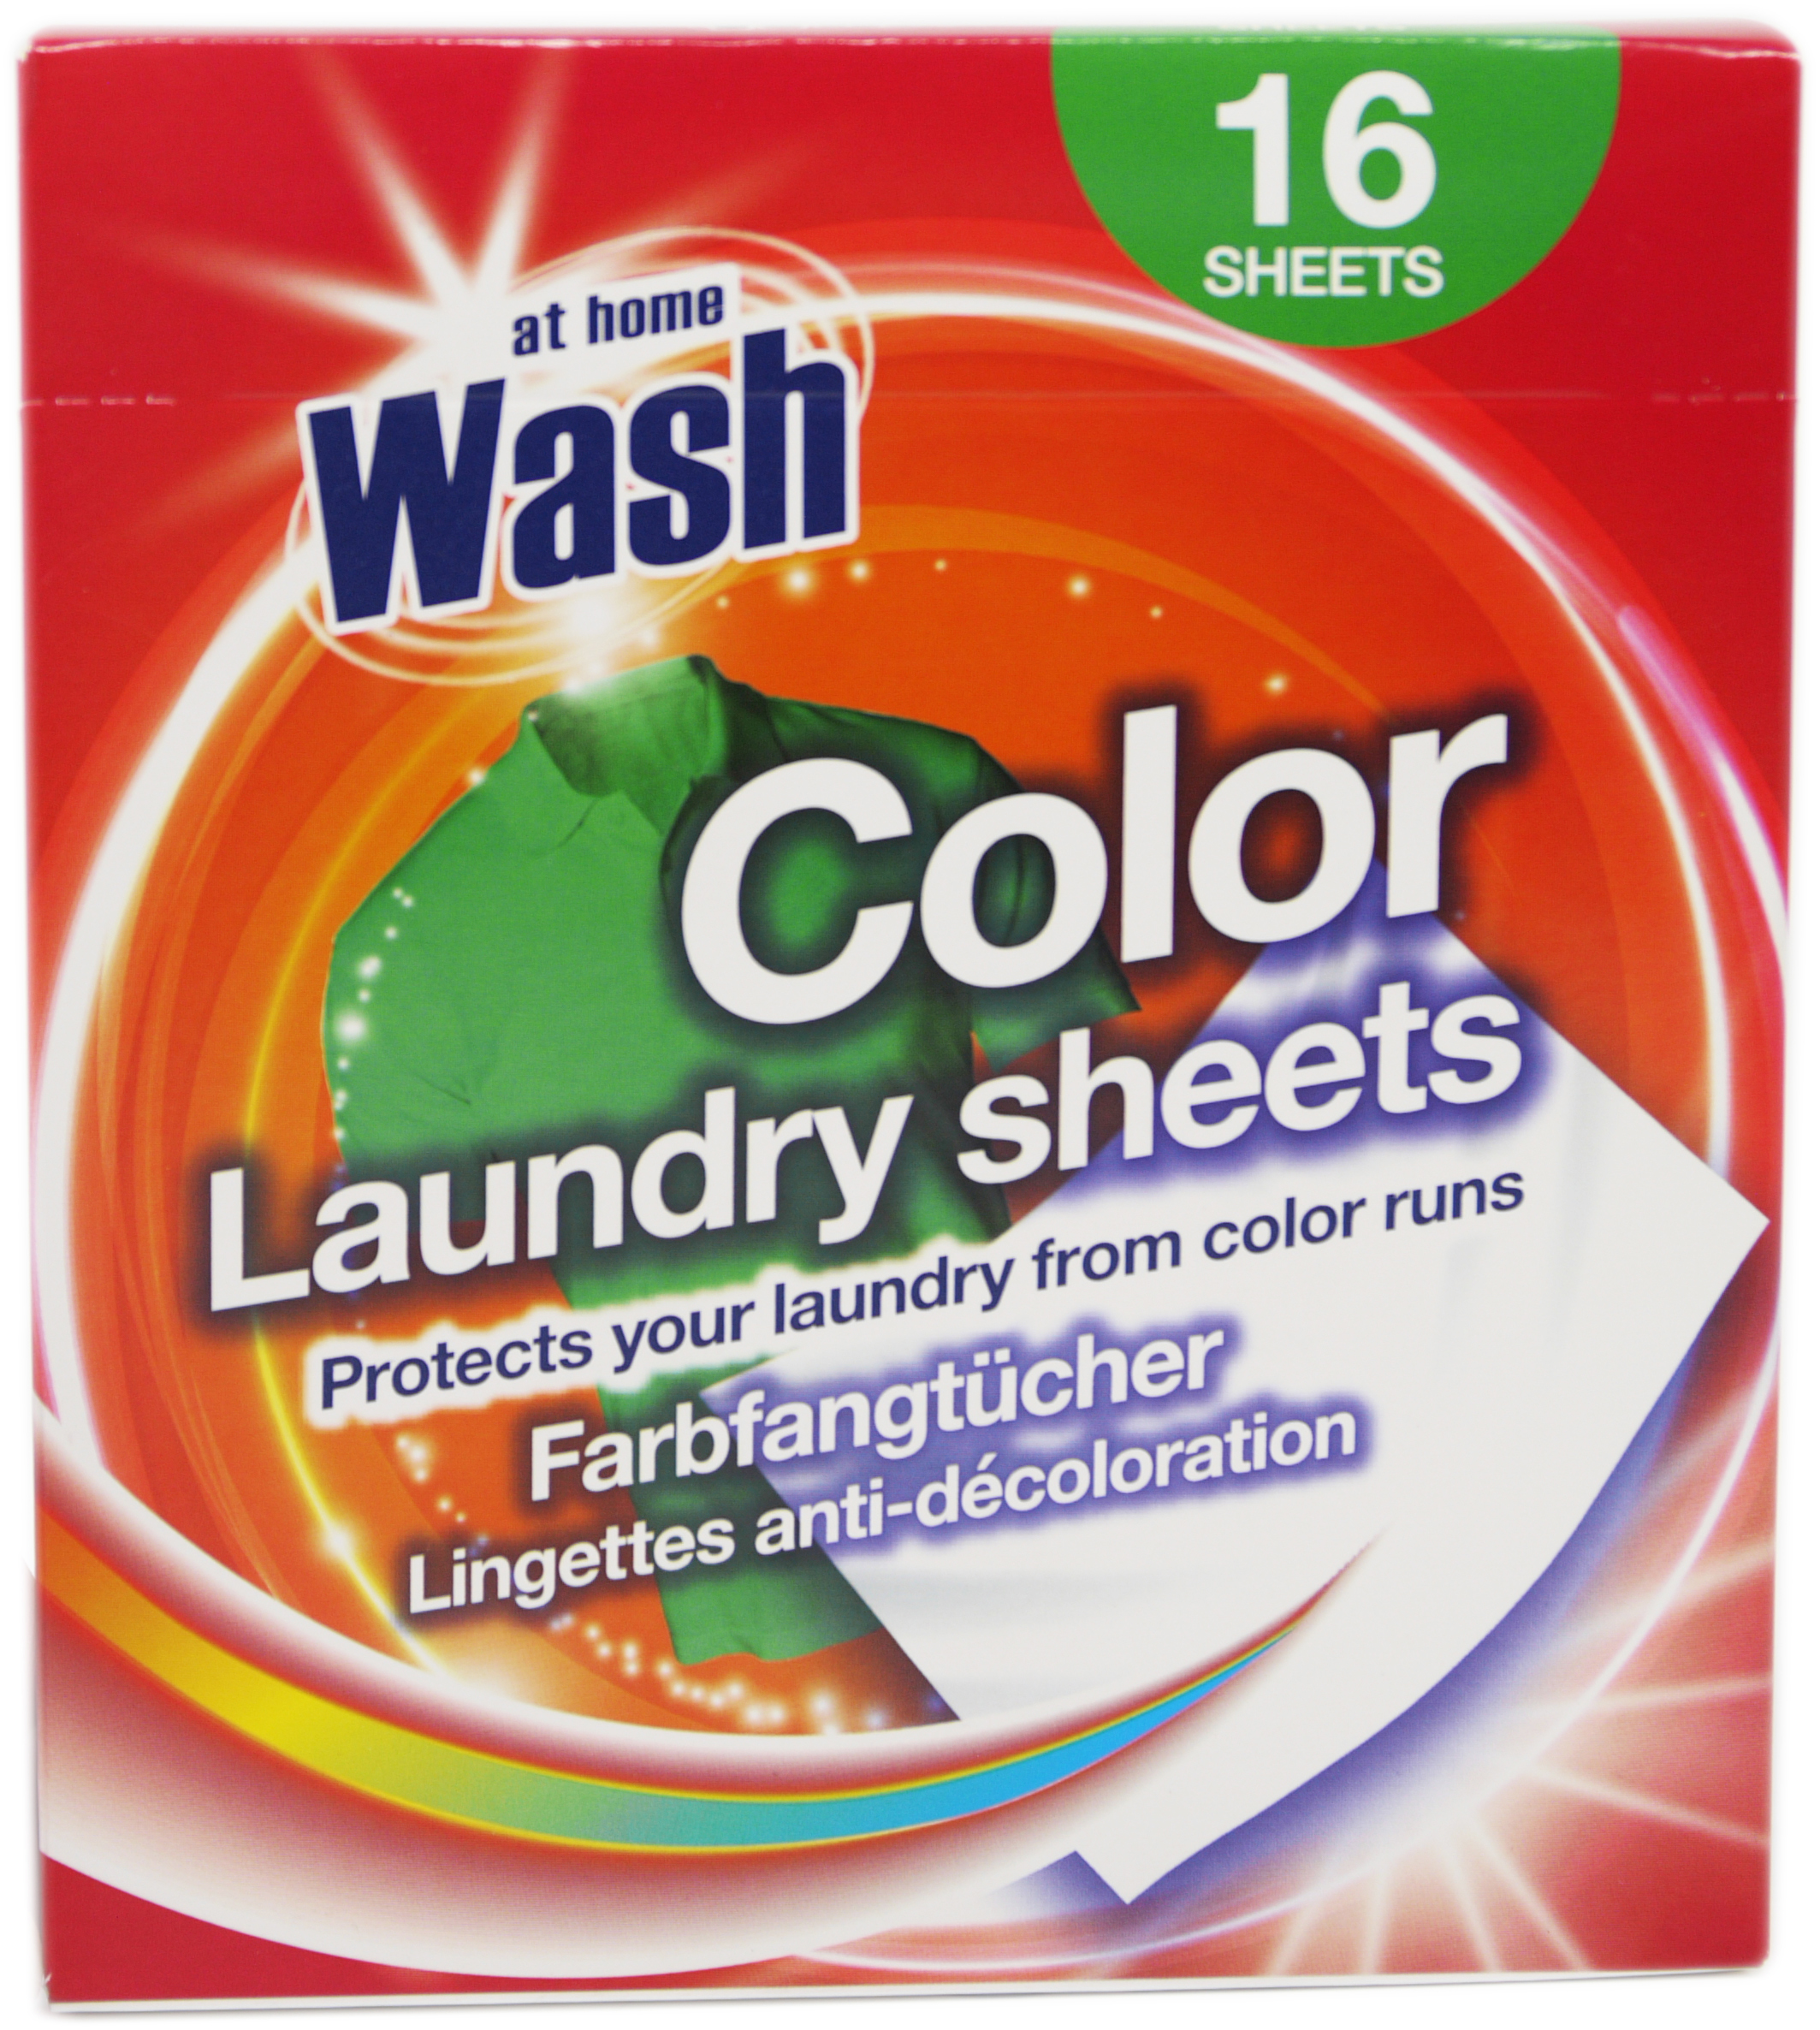 04045 - Laundry sheets 